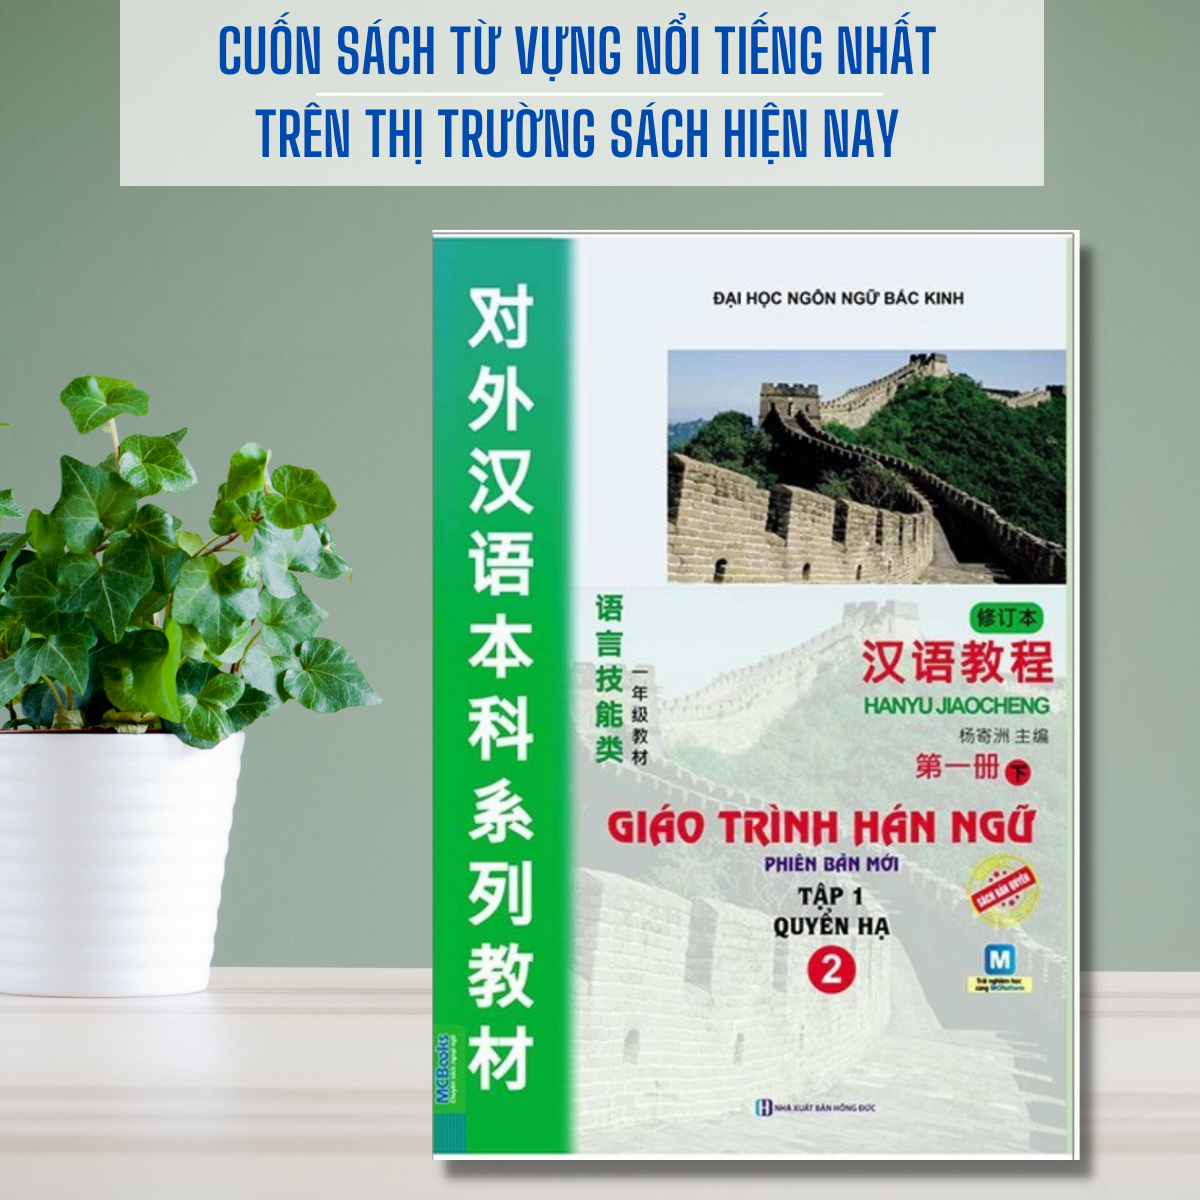 Combo Sách - 2 cuốn Giáo Trình Hán Ngữ - Sách học Tiếng Trung dành cho người Việt (Giáo Trình Hán Ngữ Tập 1 + Giáo Trình Hán Ngữ Tập 2) - Phiên bản mới - Học bằng App McBooks